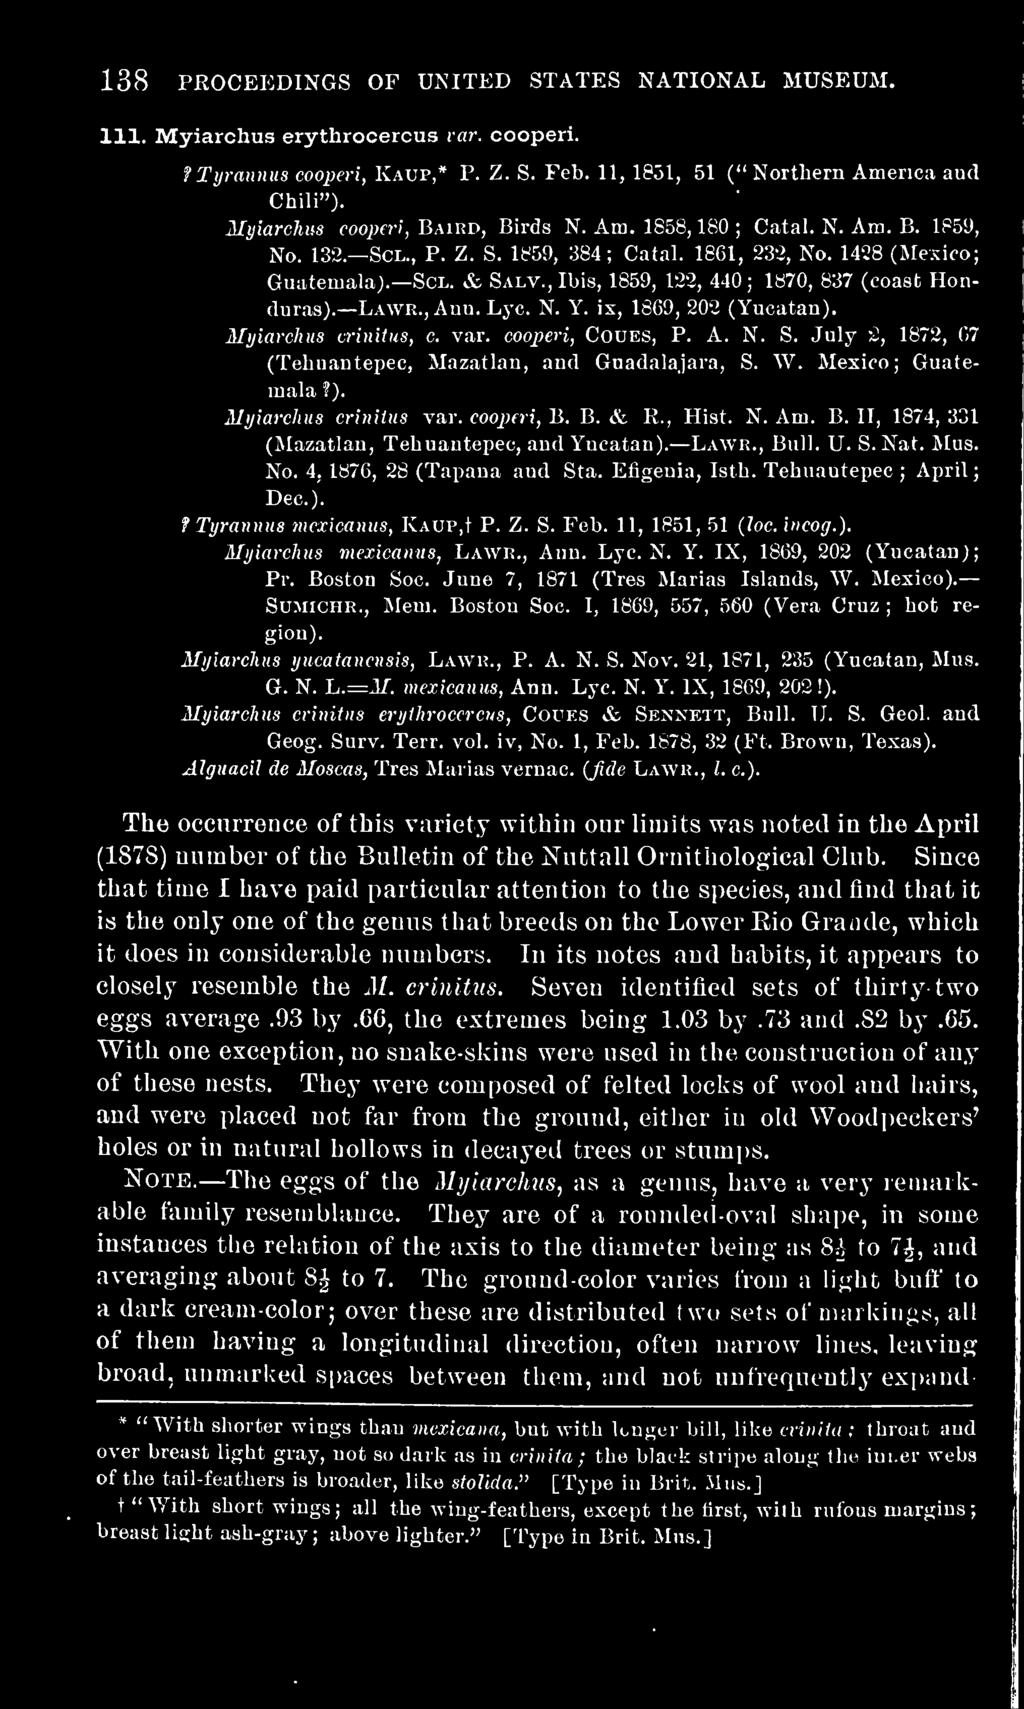 ,Ibis, 1859, 122, 440; 1870, 837 (coast Honduras). Lawr., Ann. Lj-c. N. Y. ix, 1869, 202 (Yucatan). Myiarchus crinitus, c, var. cooperi, CouES, P. A. N. S.